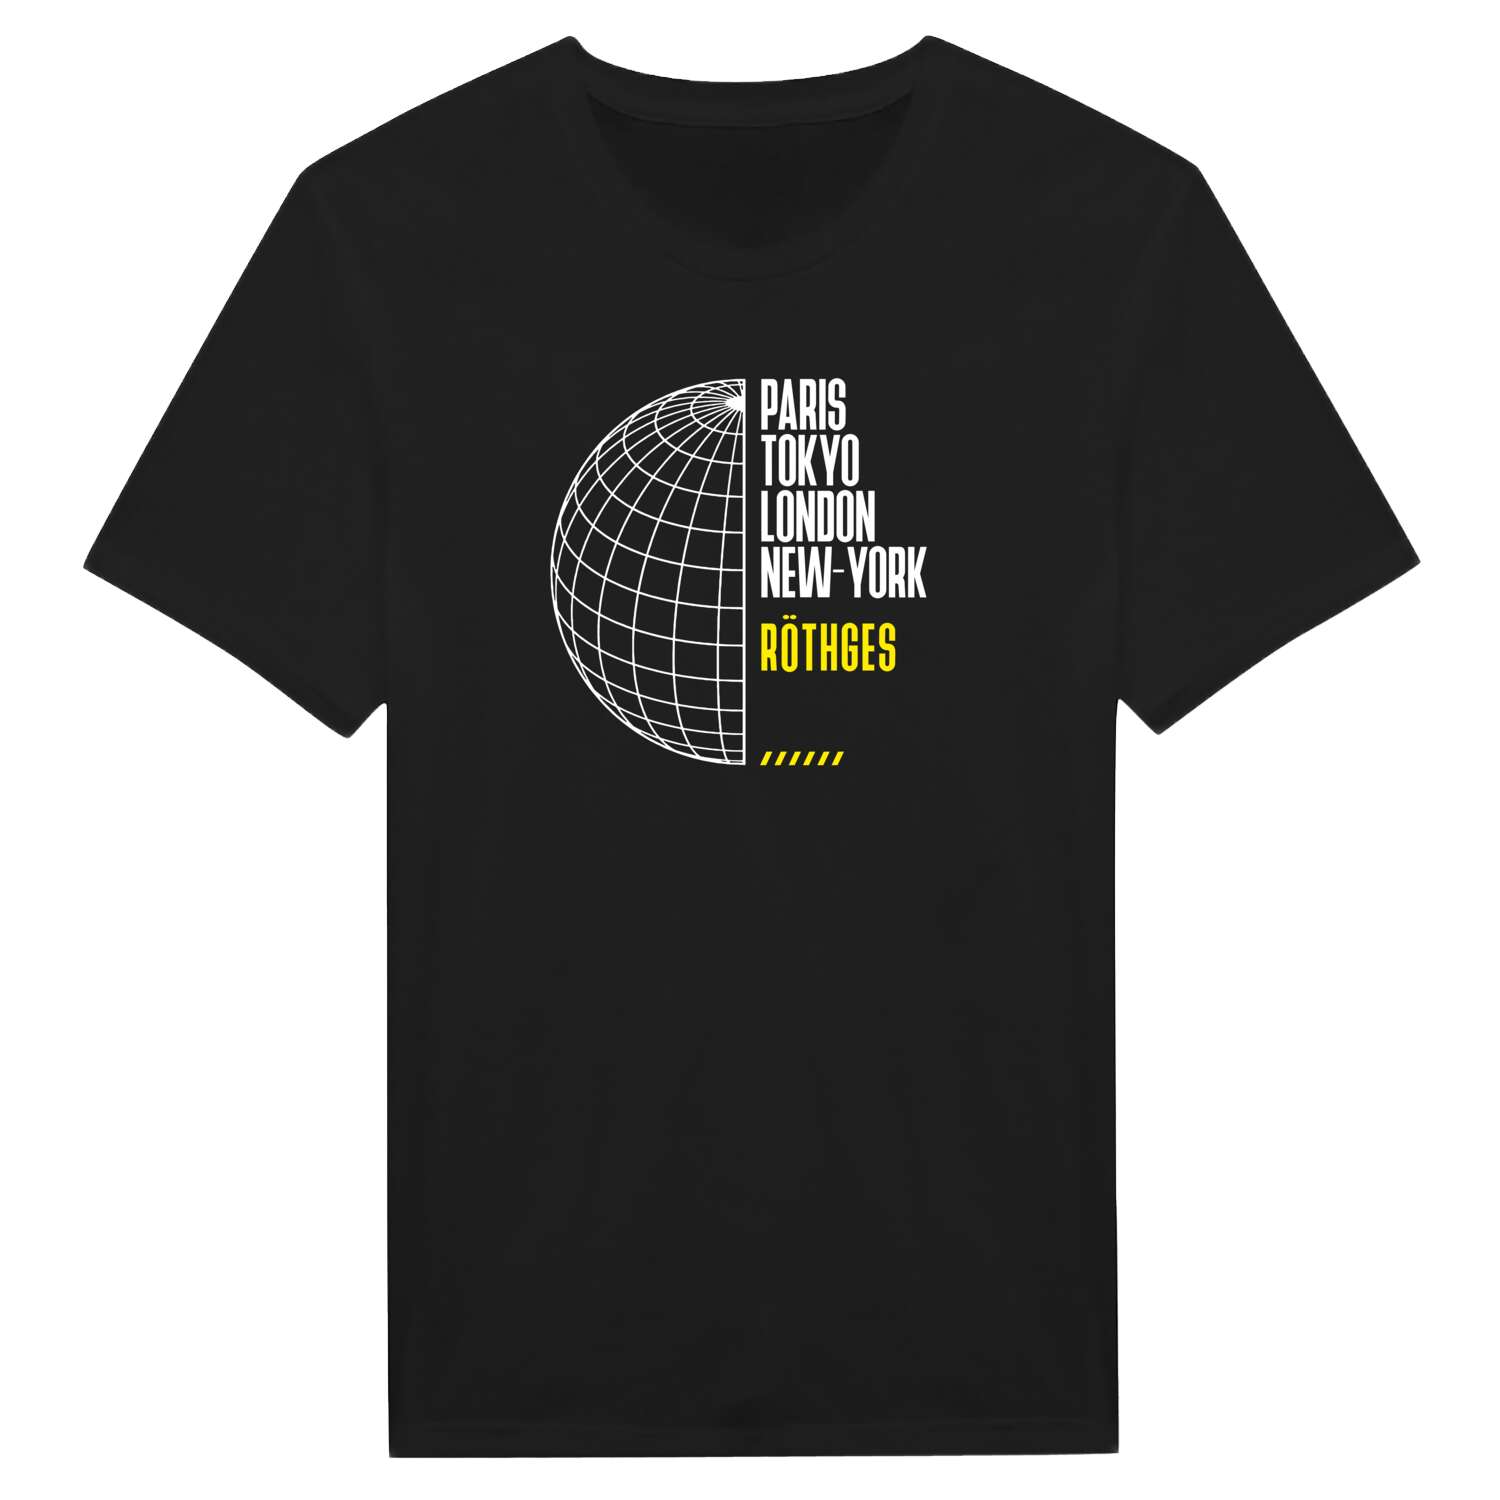 Röthges T-Shirt »Paris Tokyo London«